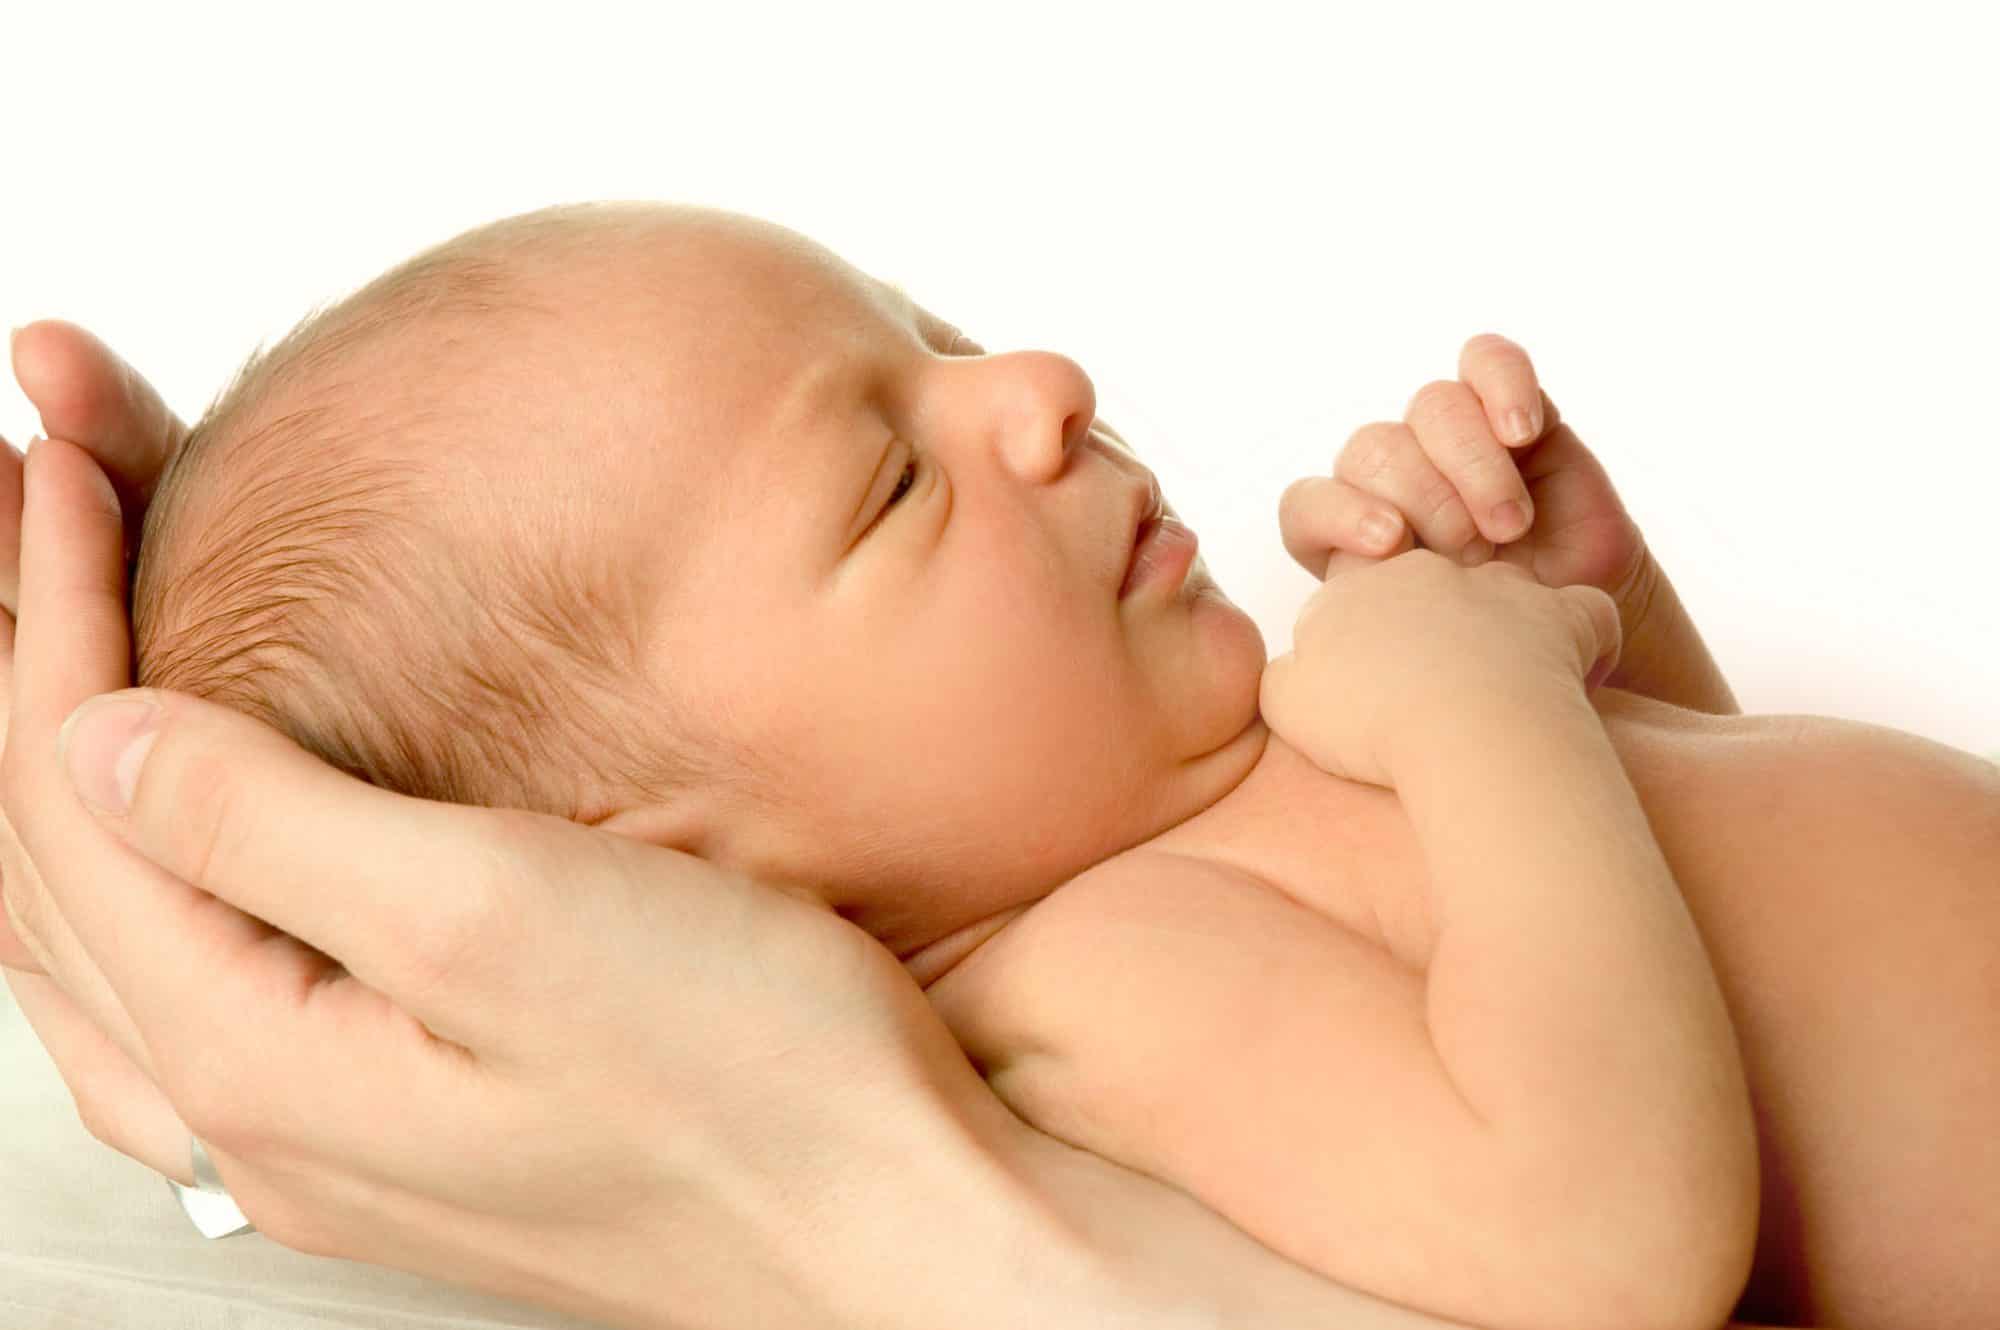 La lactancia materna contribuye a luchar contra la obesidad infantil